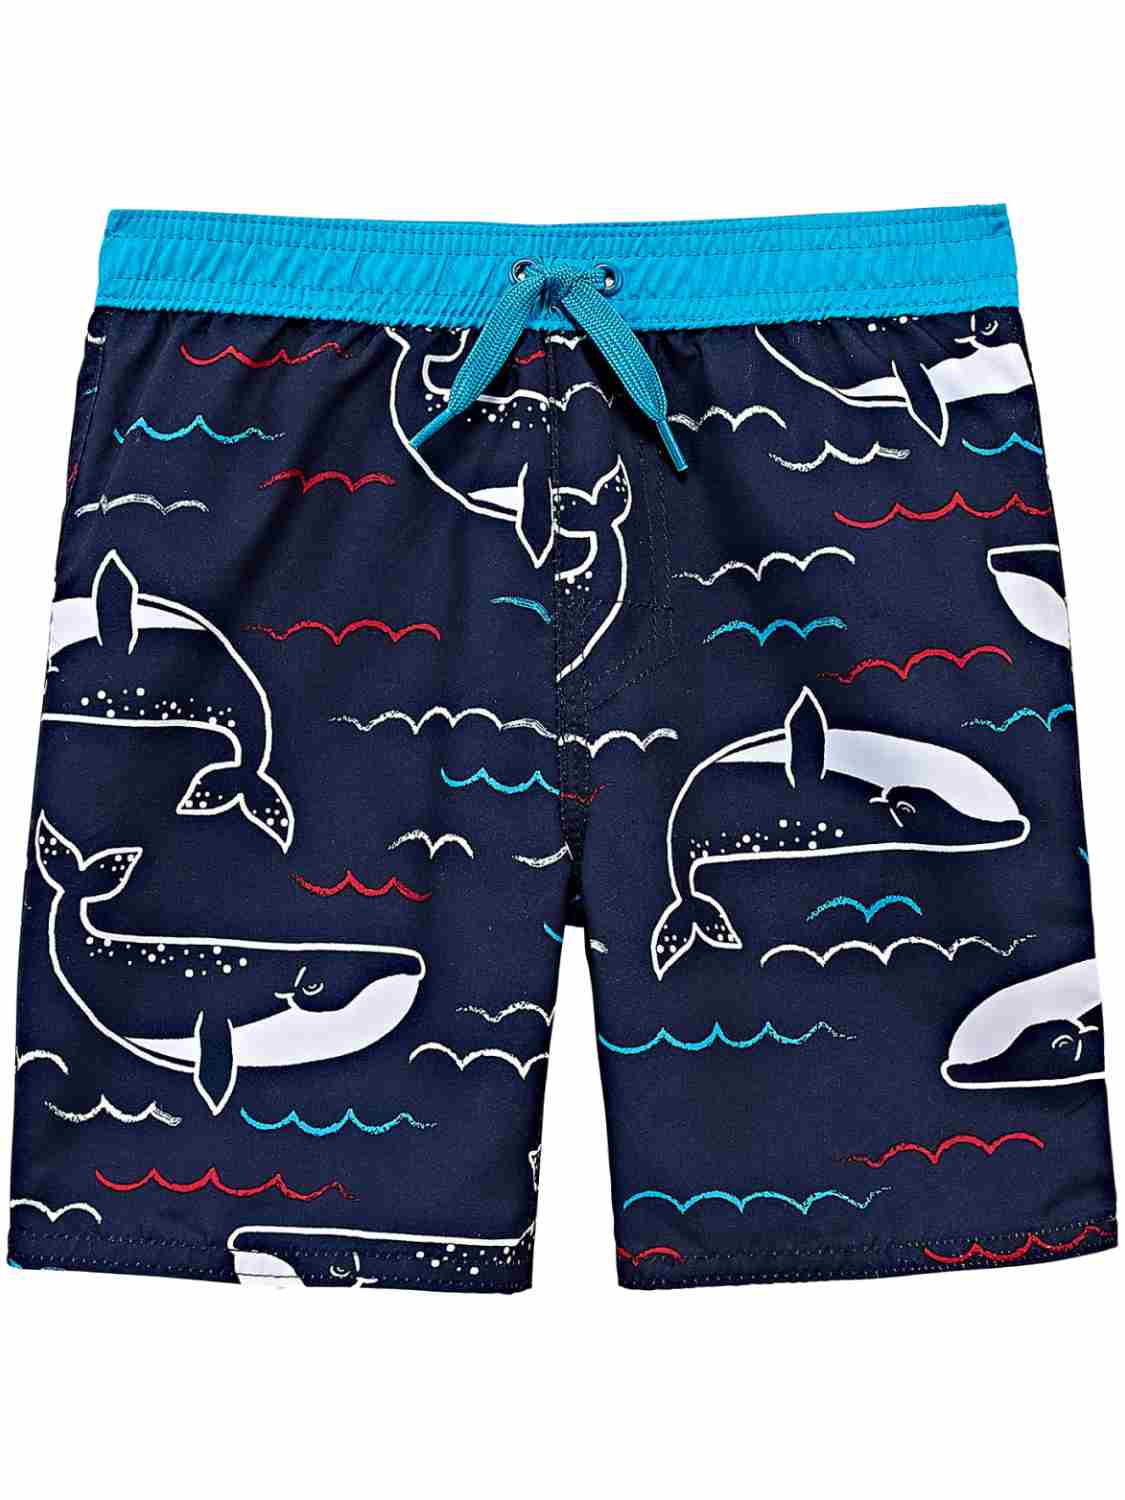 OKIDOKEYS Toddler Boys Navy Blue White & Red Whale Swim Trunks Board Shorts